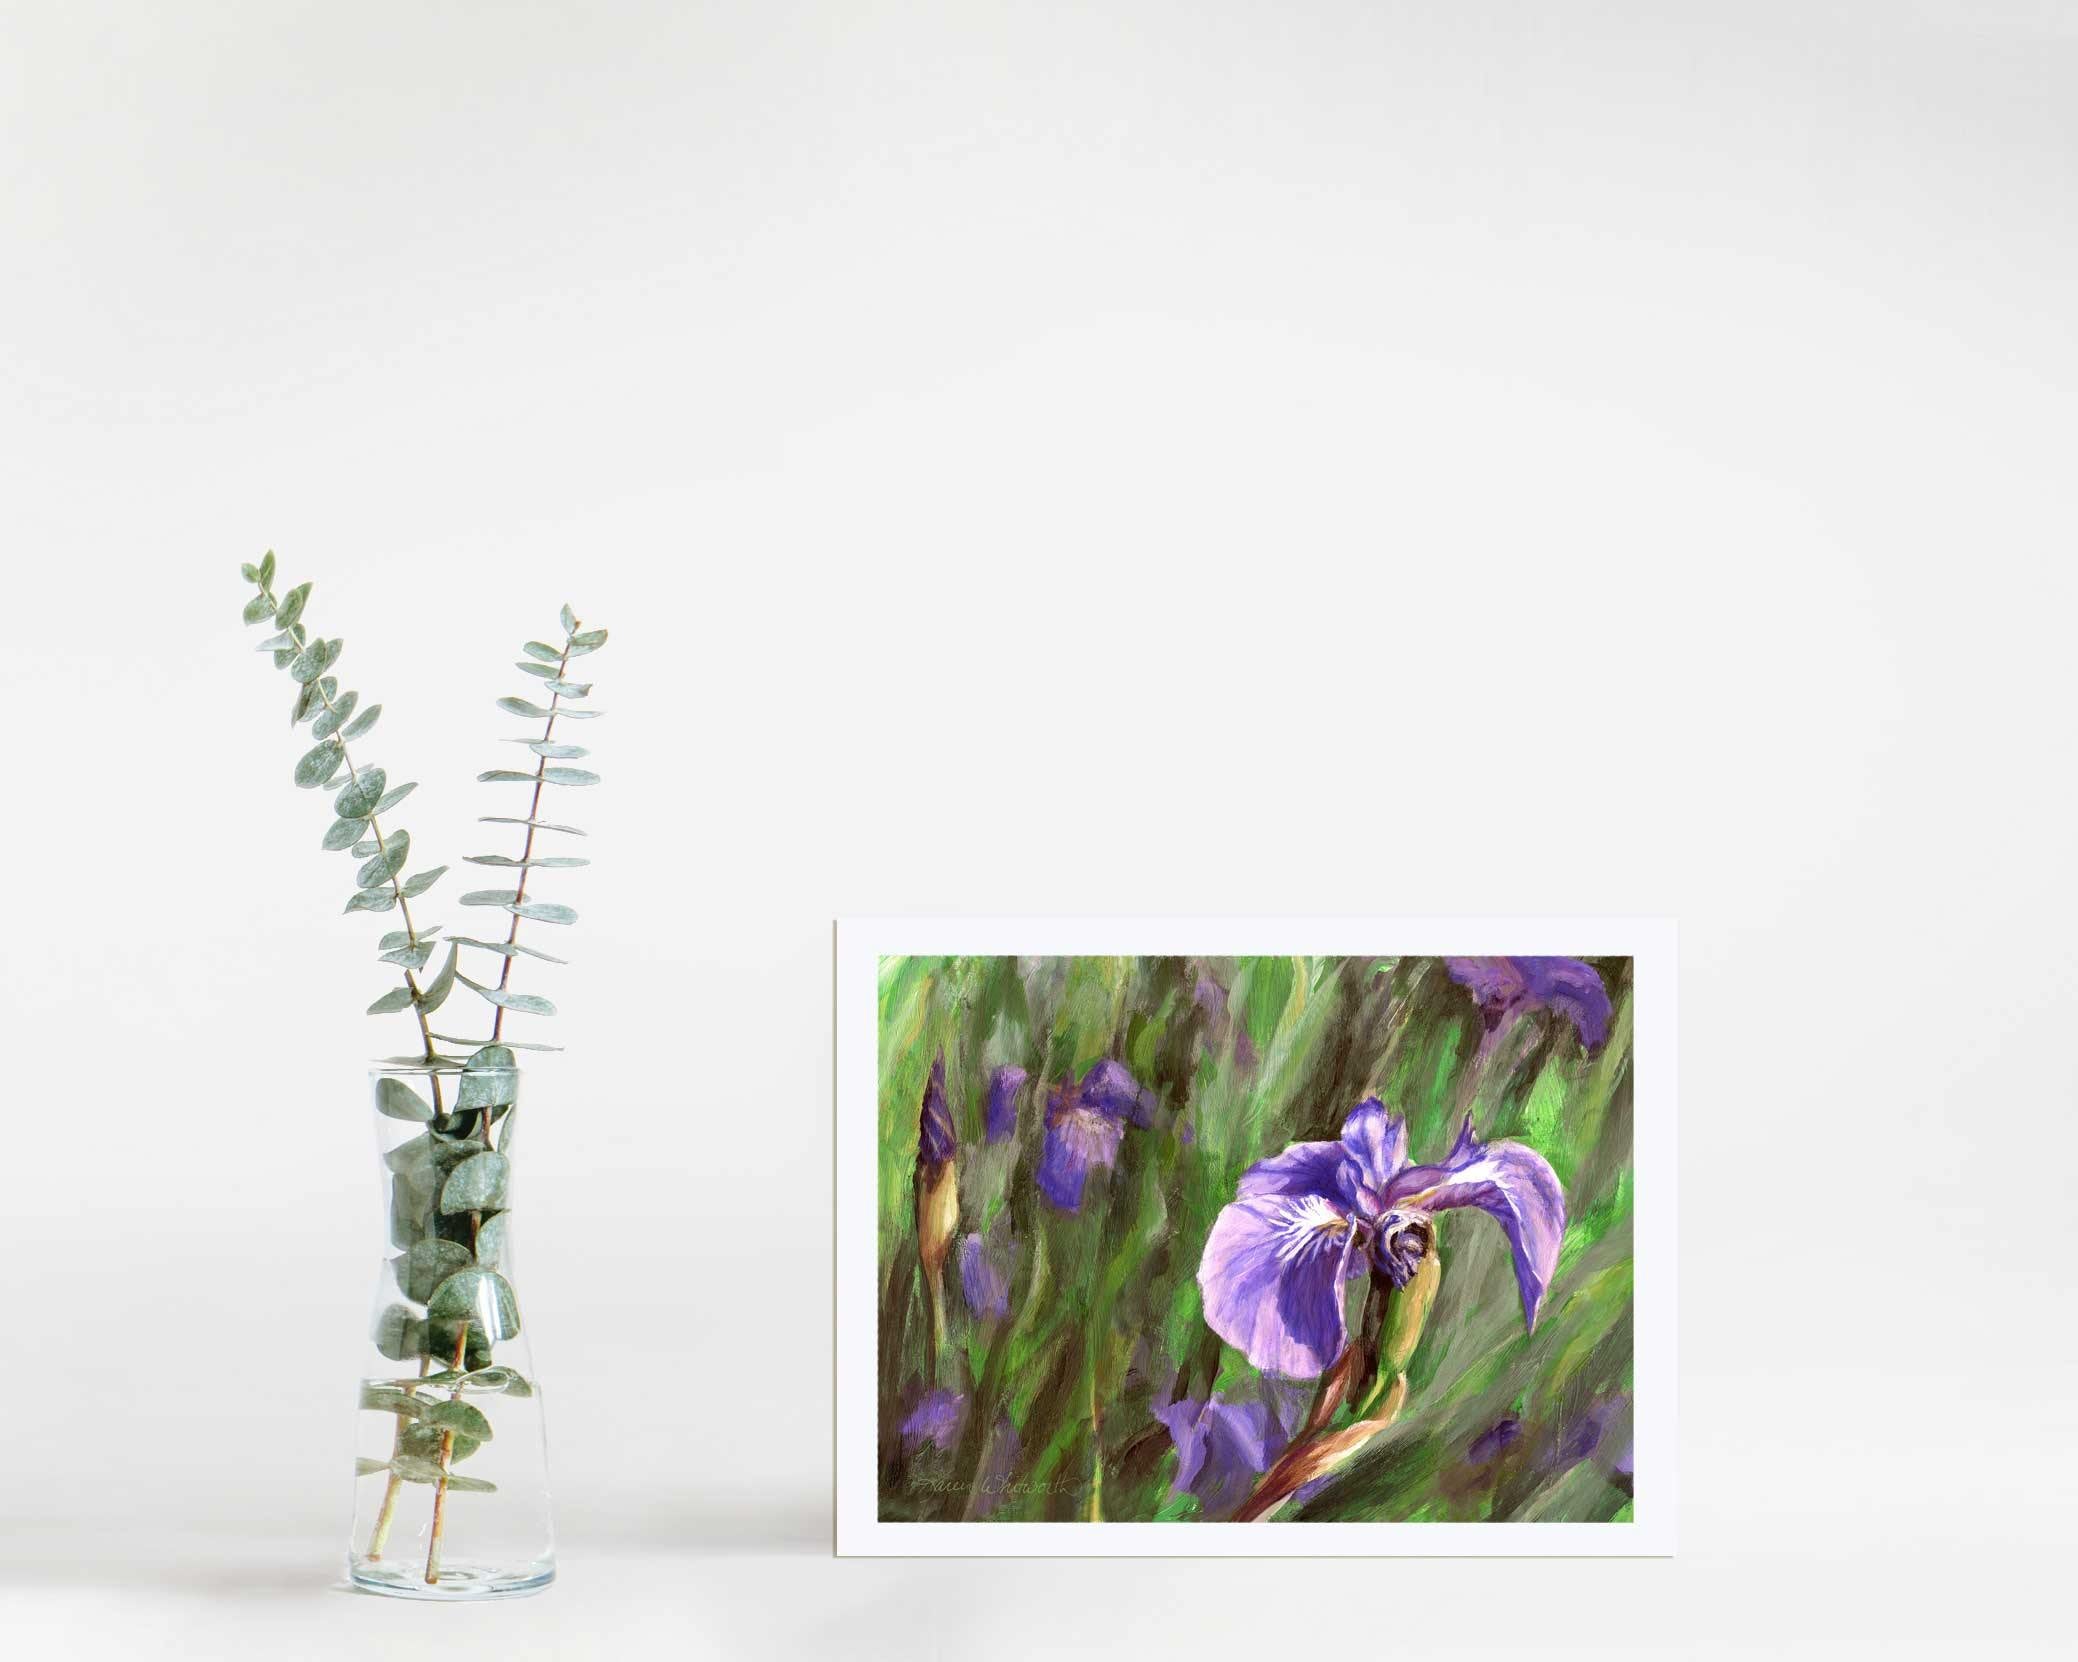 5x7" Paper wall art print of Alaskan wild iris flower by artist Karen Whitworth